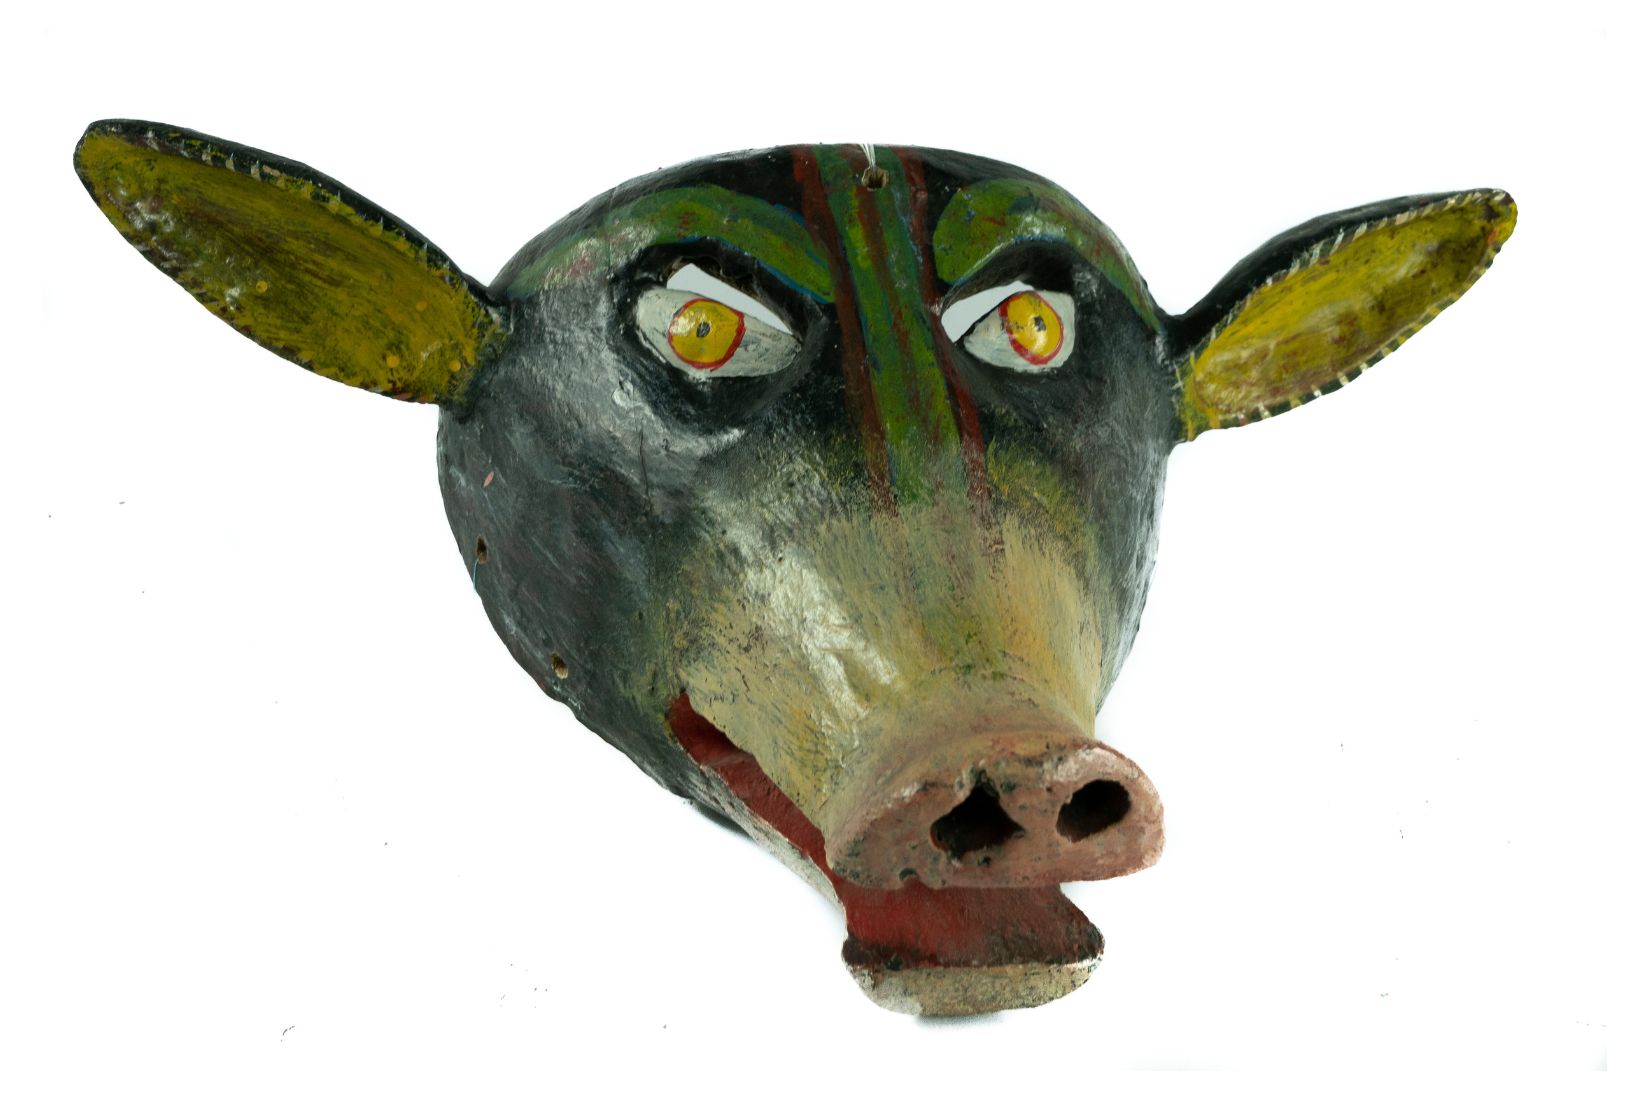 Máscara de burro en madera tallada y policromada. Artesano y procedencia desconocidos.  Col. Amparo Espinosa Rugarcía donada a AmigosMAP. (Foto: EKV).